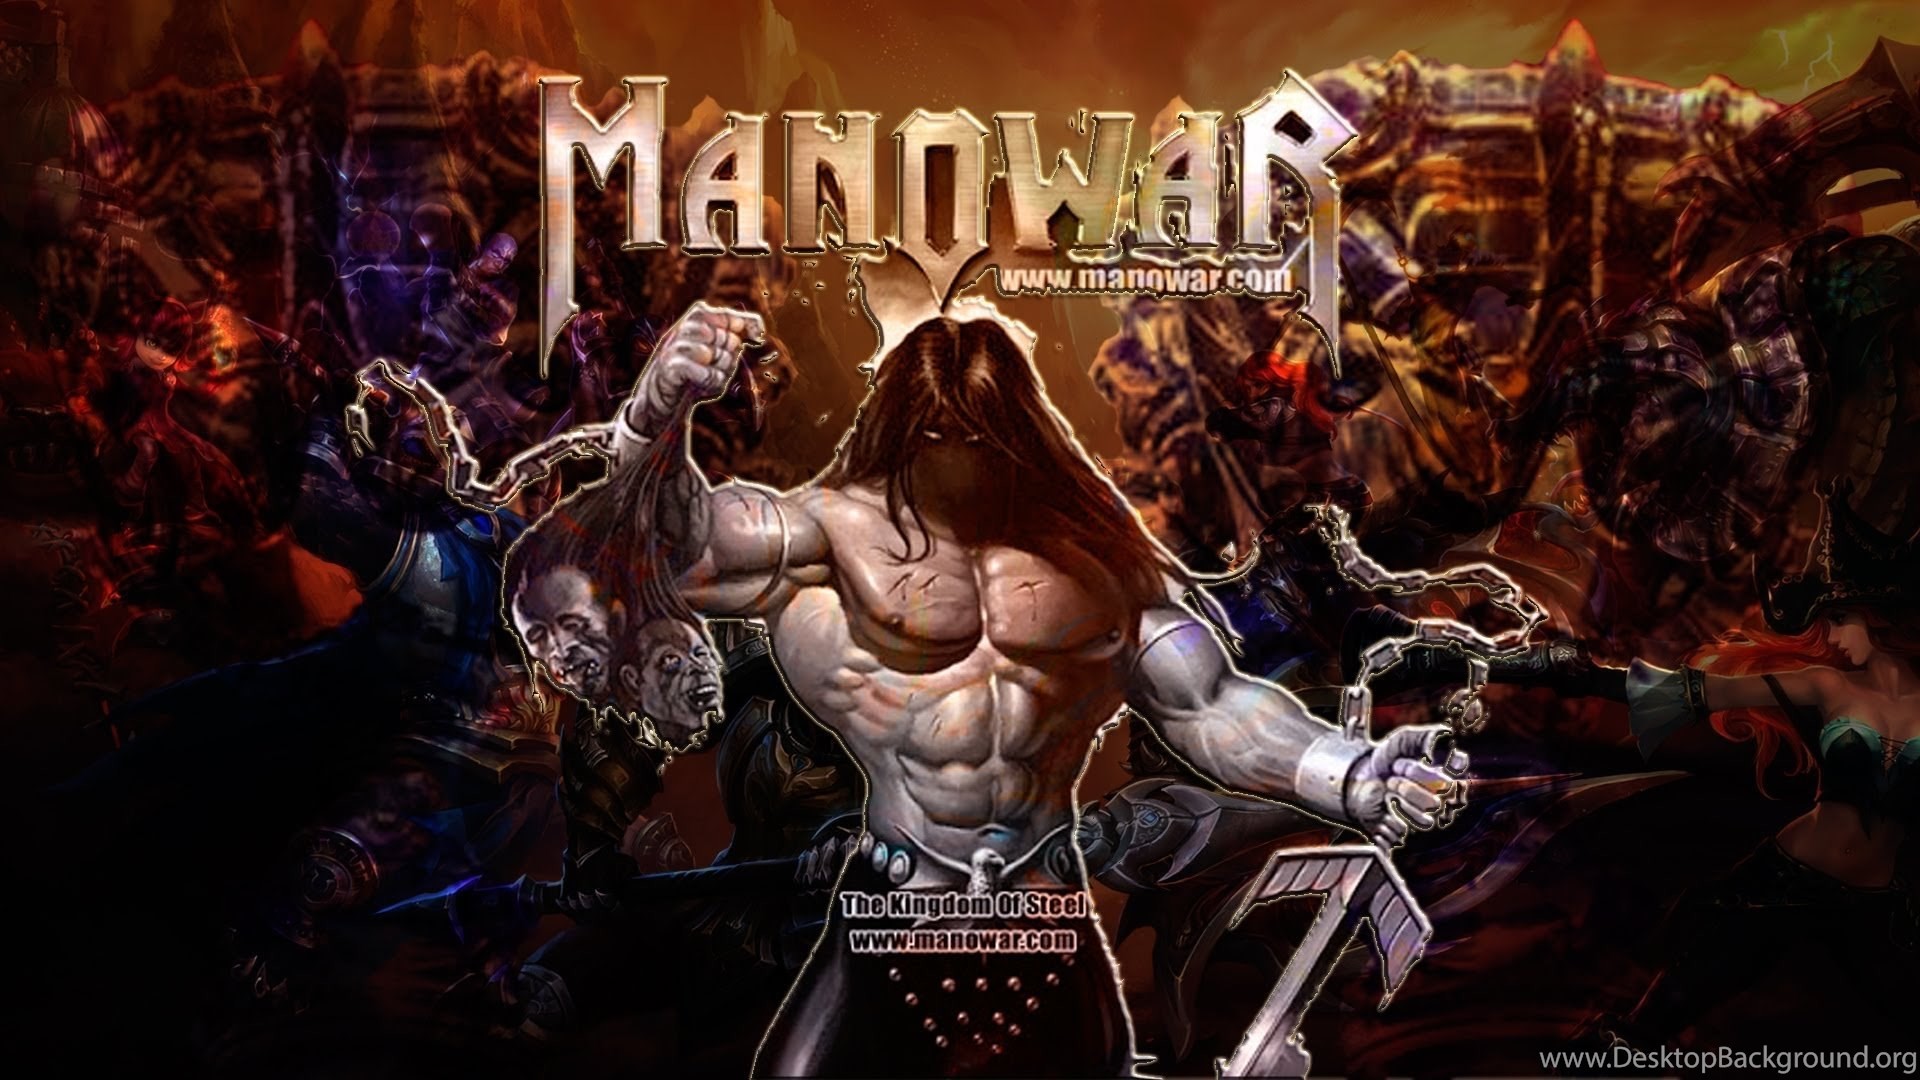 Manowar united warriors. Постеры группы Manowar. Обложки дисков Manowar. Группа Manowar обложки. Manowar обложки альбомов.